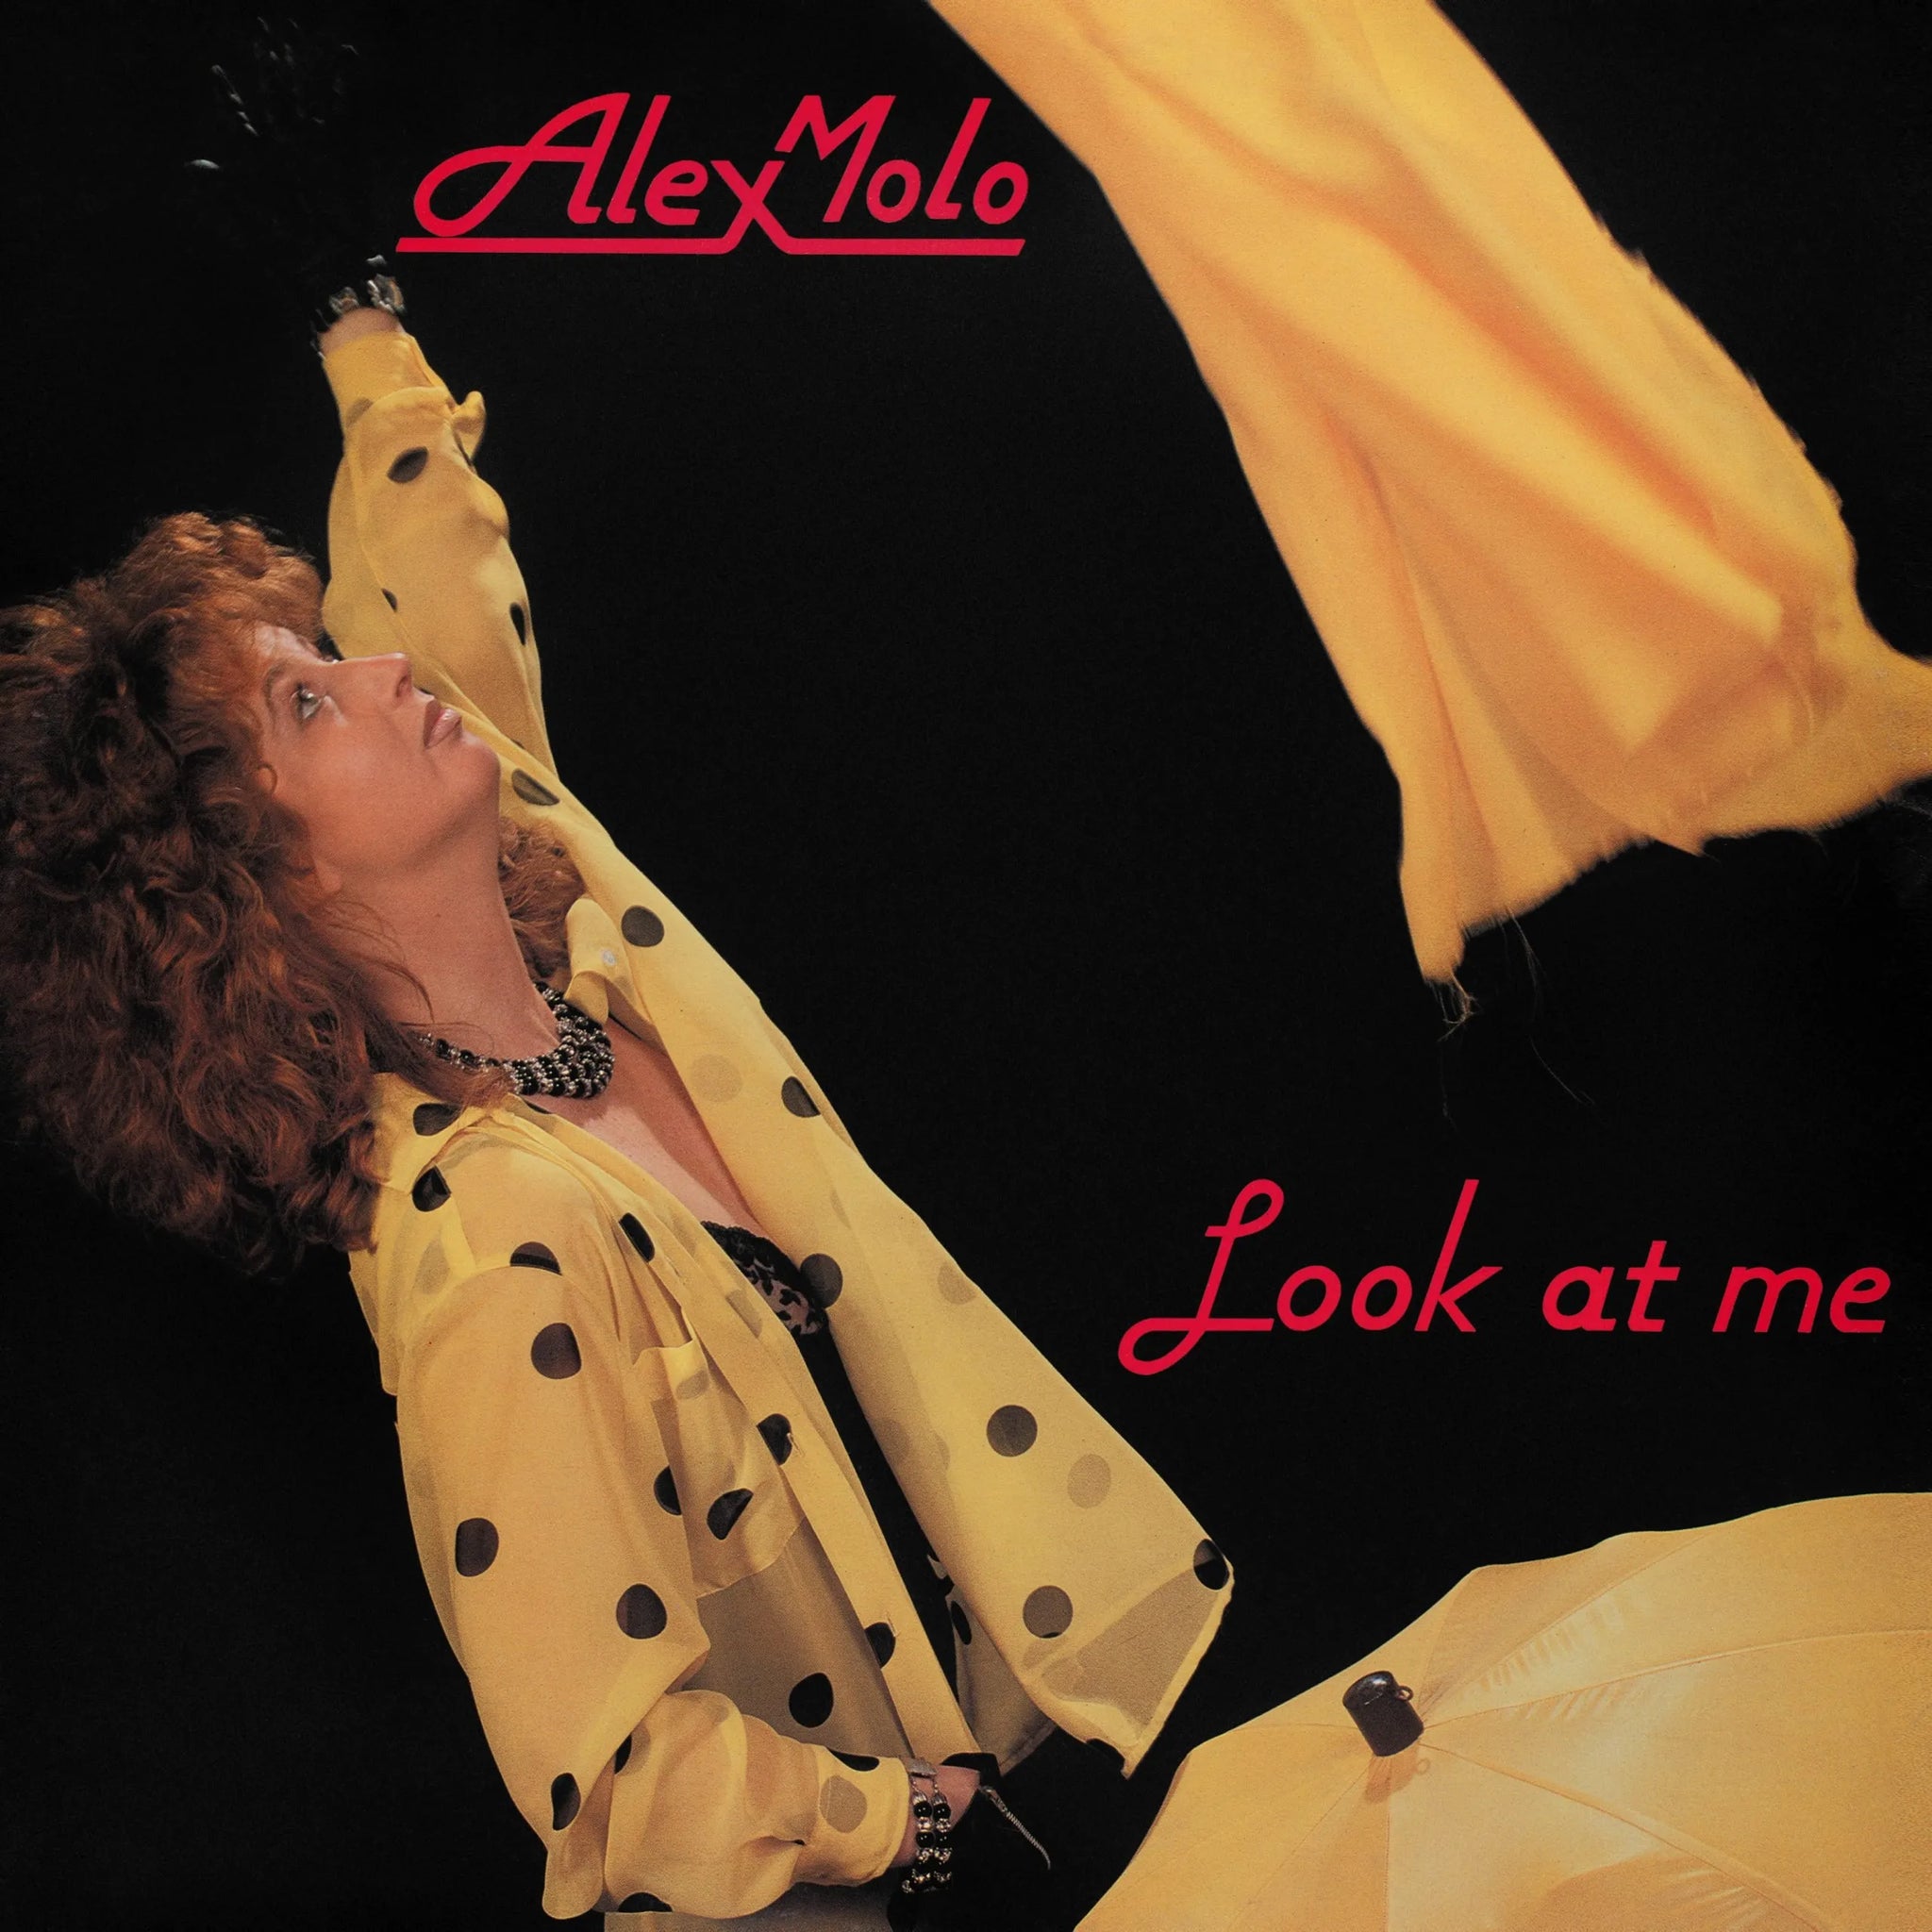 ALEX MOLO - LOOK AT ME Vinyl LP